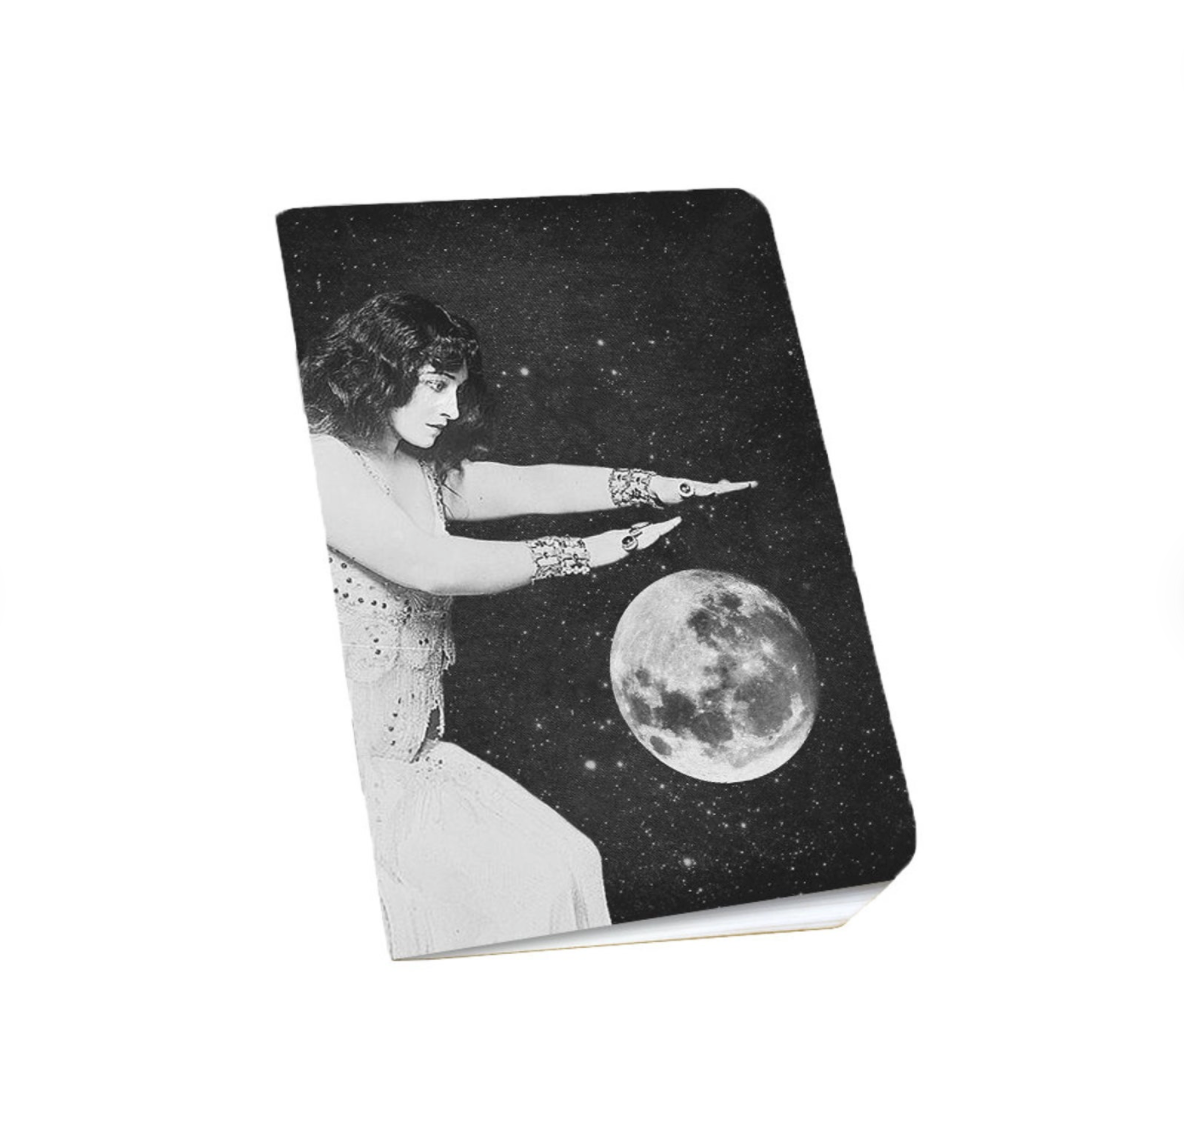 Notebook (2 Pack) - Woman & Moon (Galek Sea)